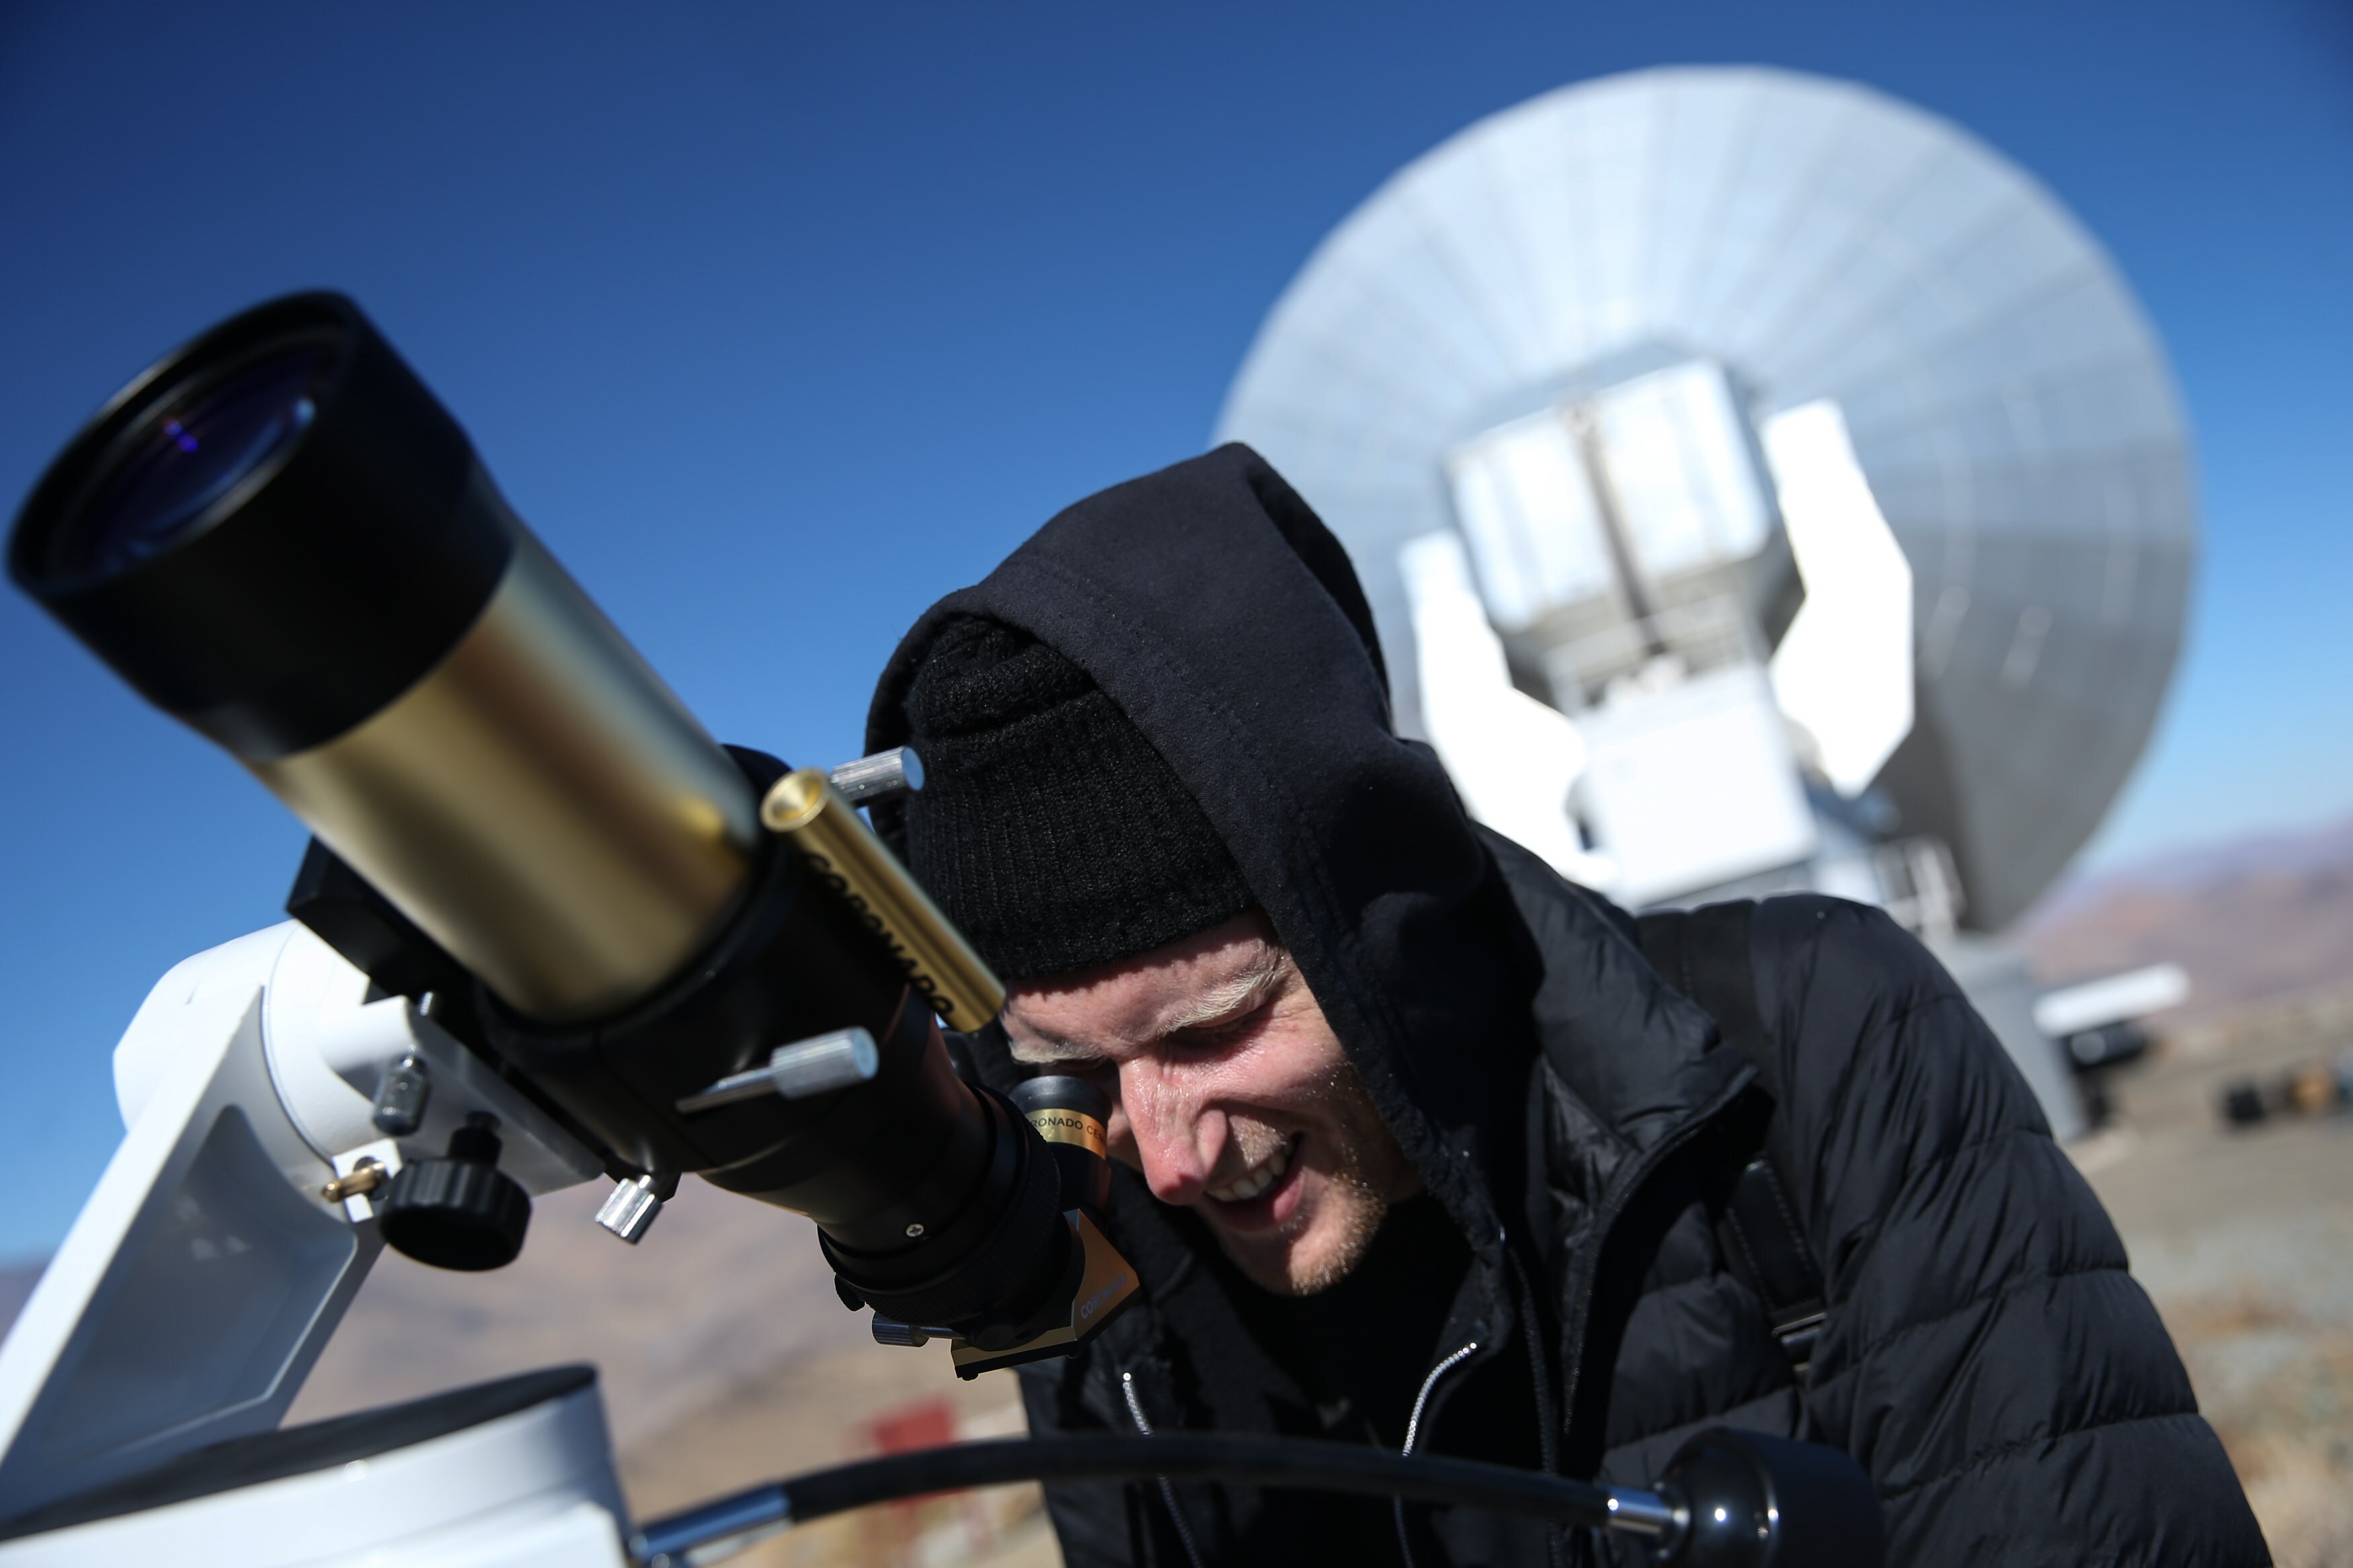 El asteroide podrá verse con binoculares y telescopios (EFE/Alberto Valdés)
